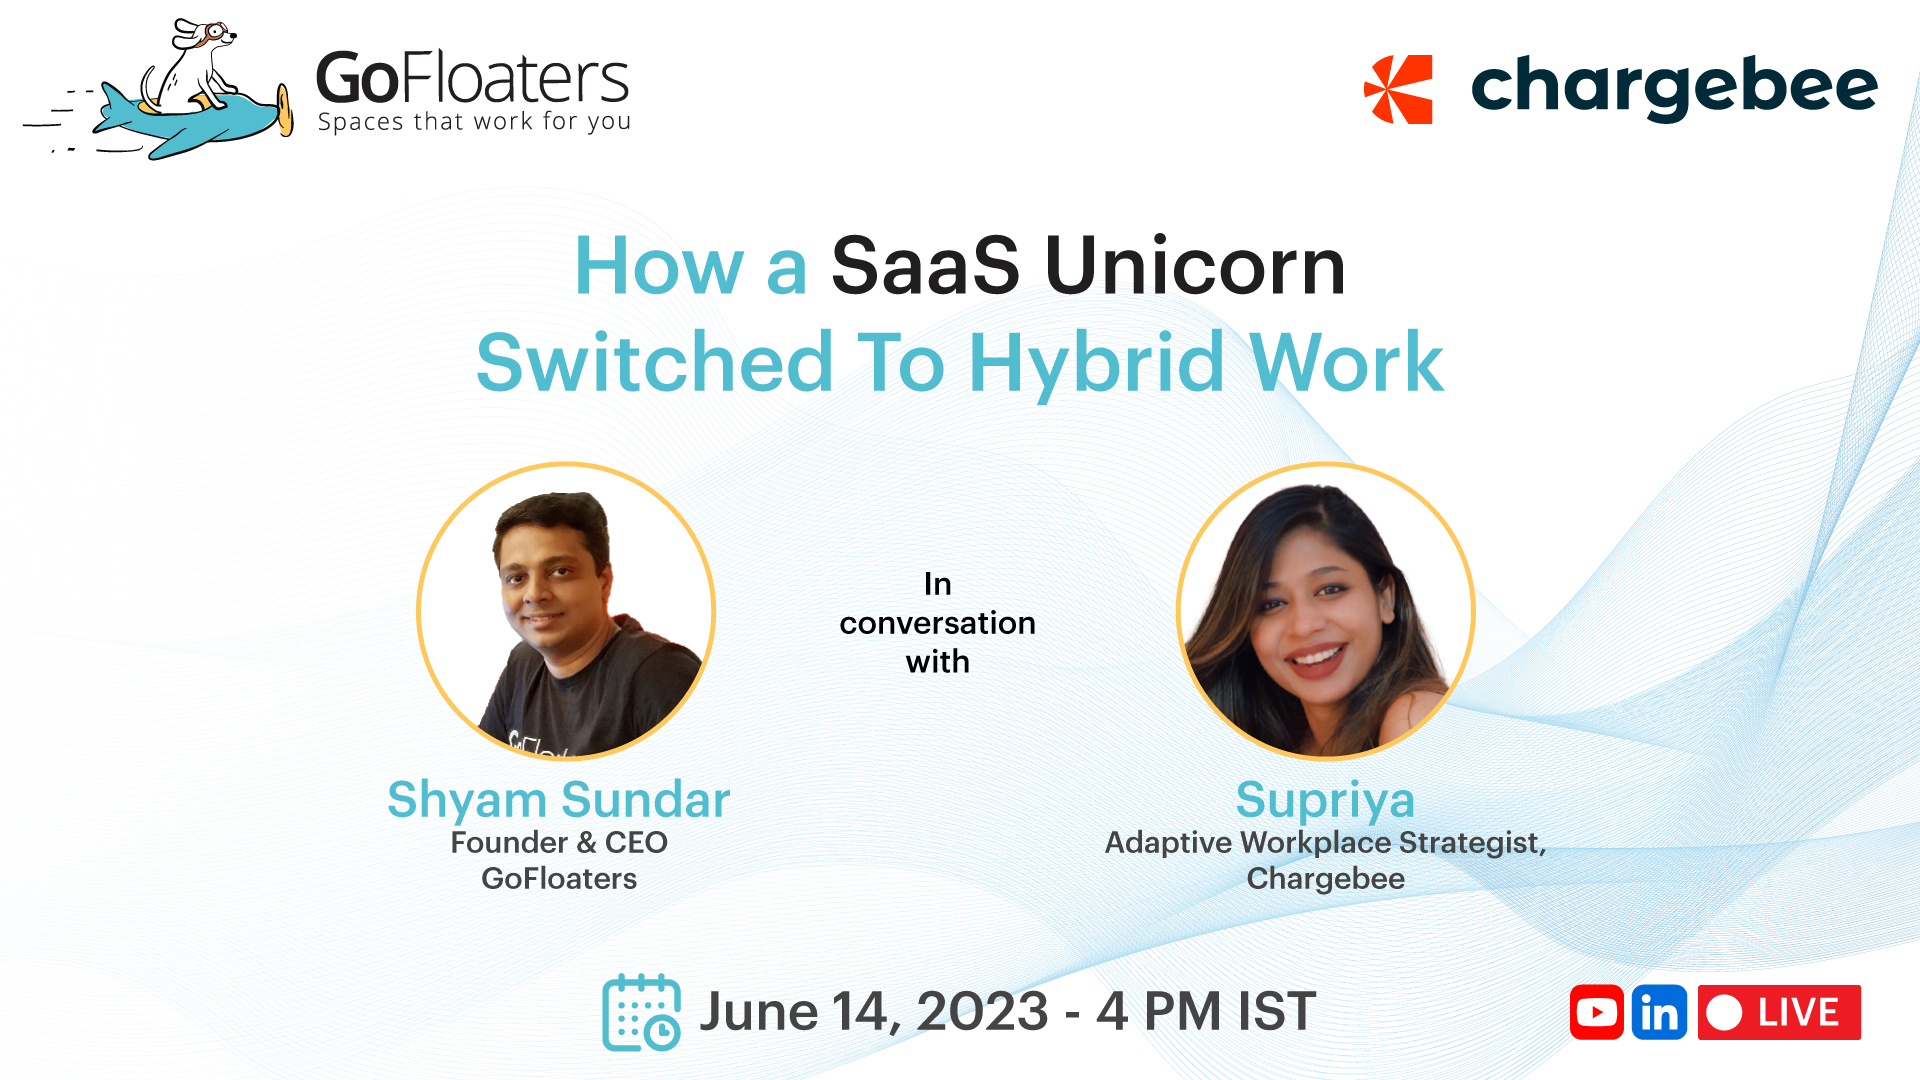 The Hybrid Work Journey of SaaS Unicorn | GoFloaters x Chargebee